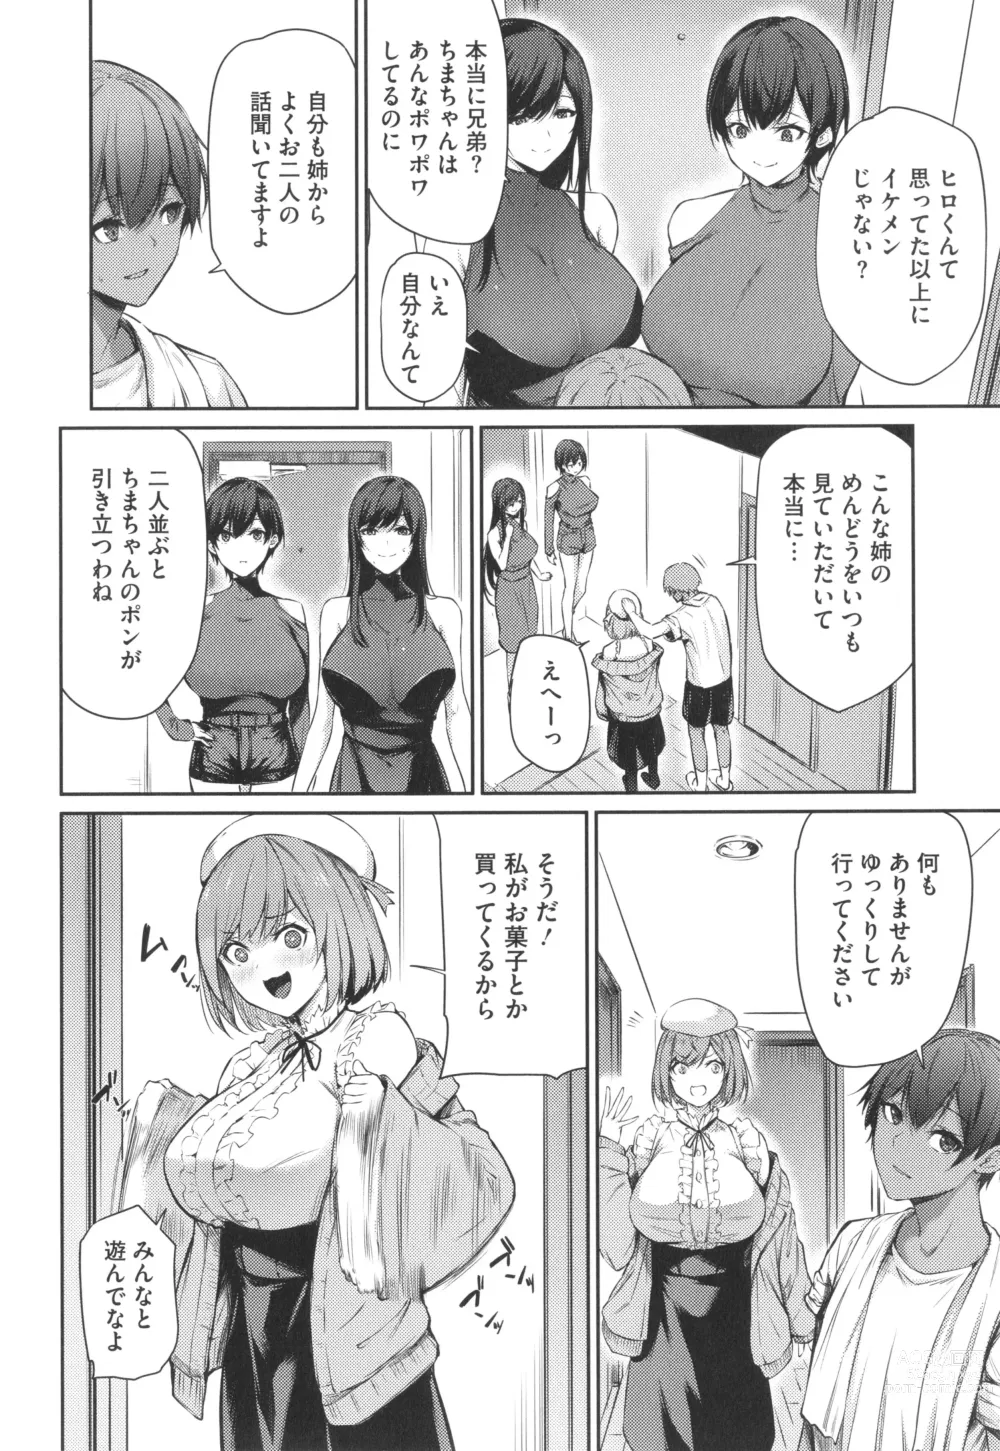 Page 5 of manga Karada Awase